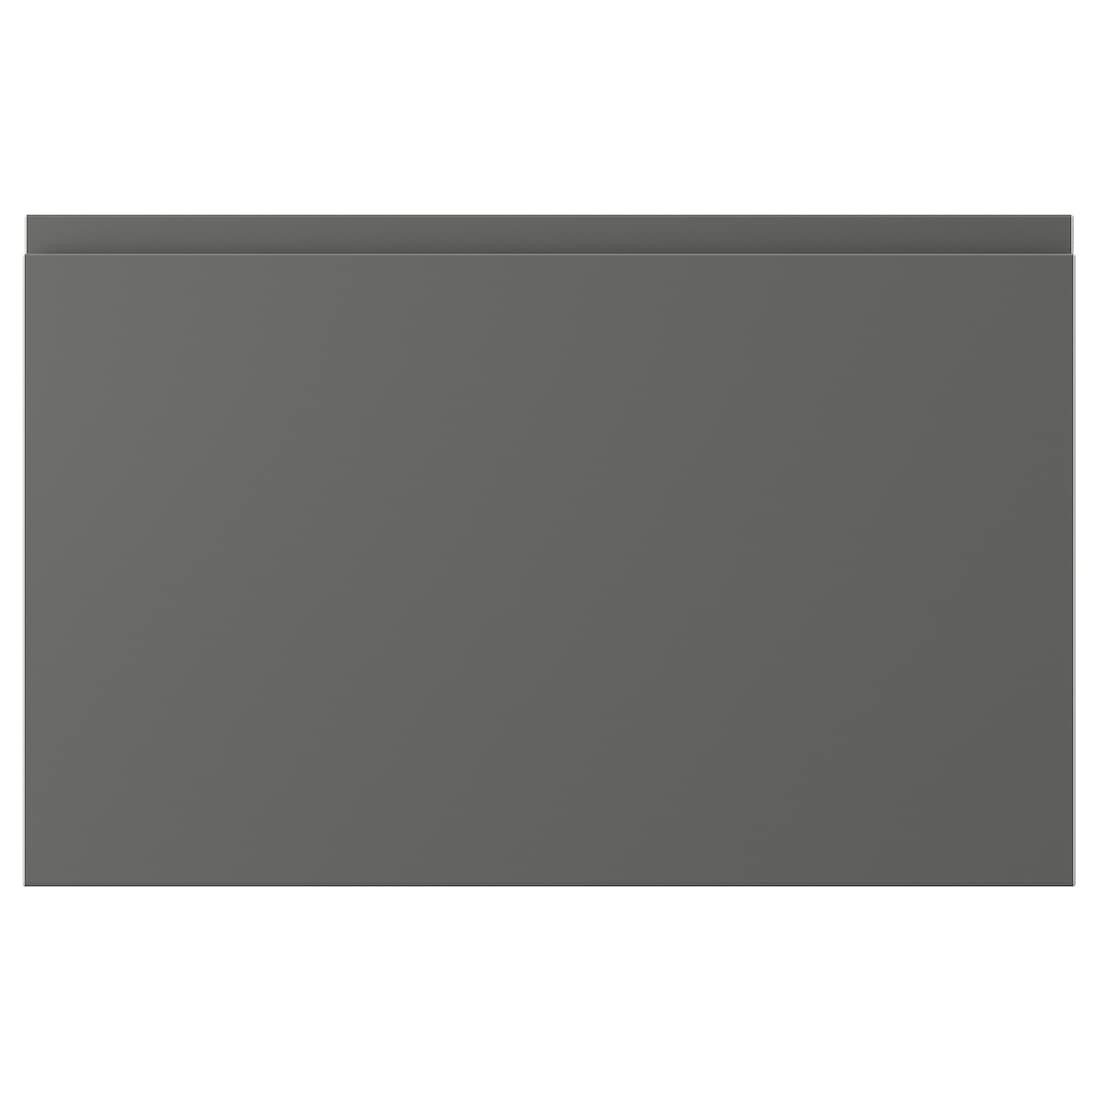 VÄSTERVIKEN ВЕСТЕРВІКЕН Двері / фронтальна панель ящика, темно-сірий, 60x38 см